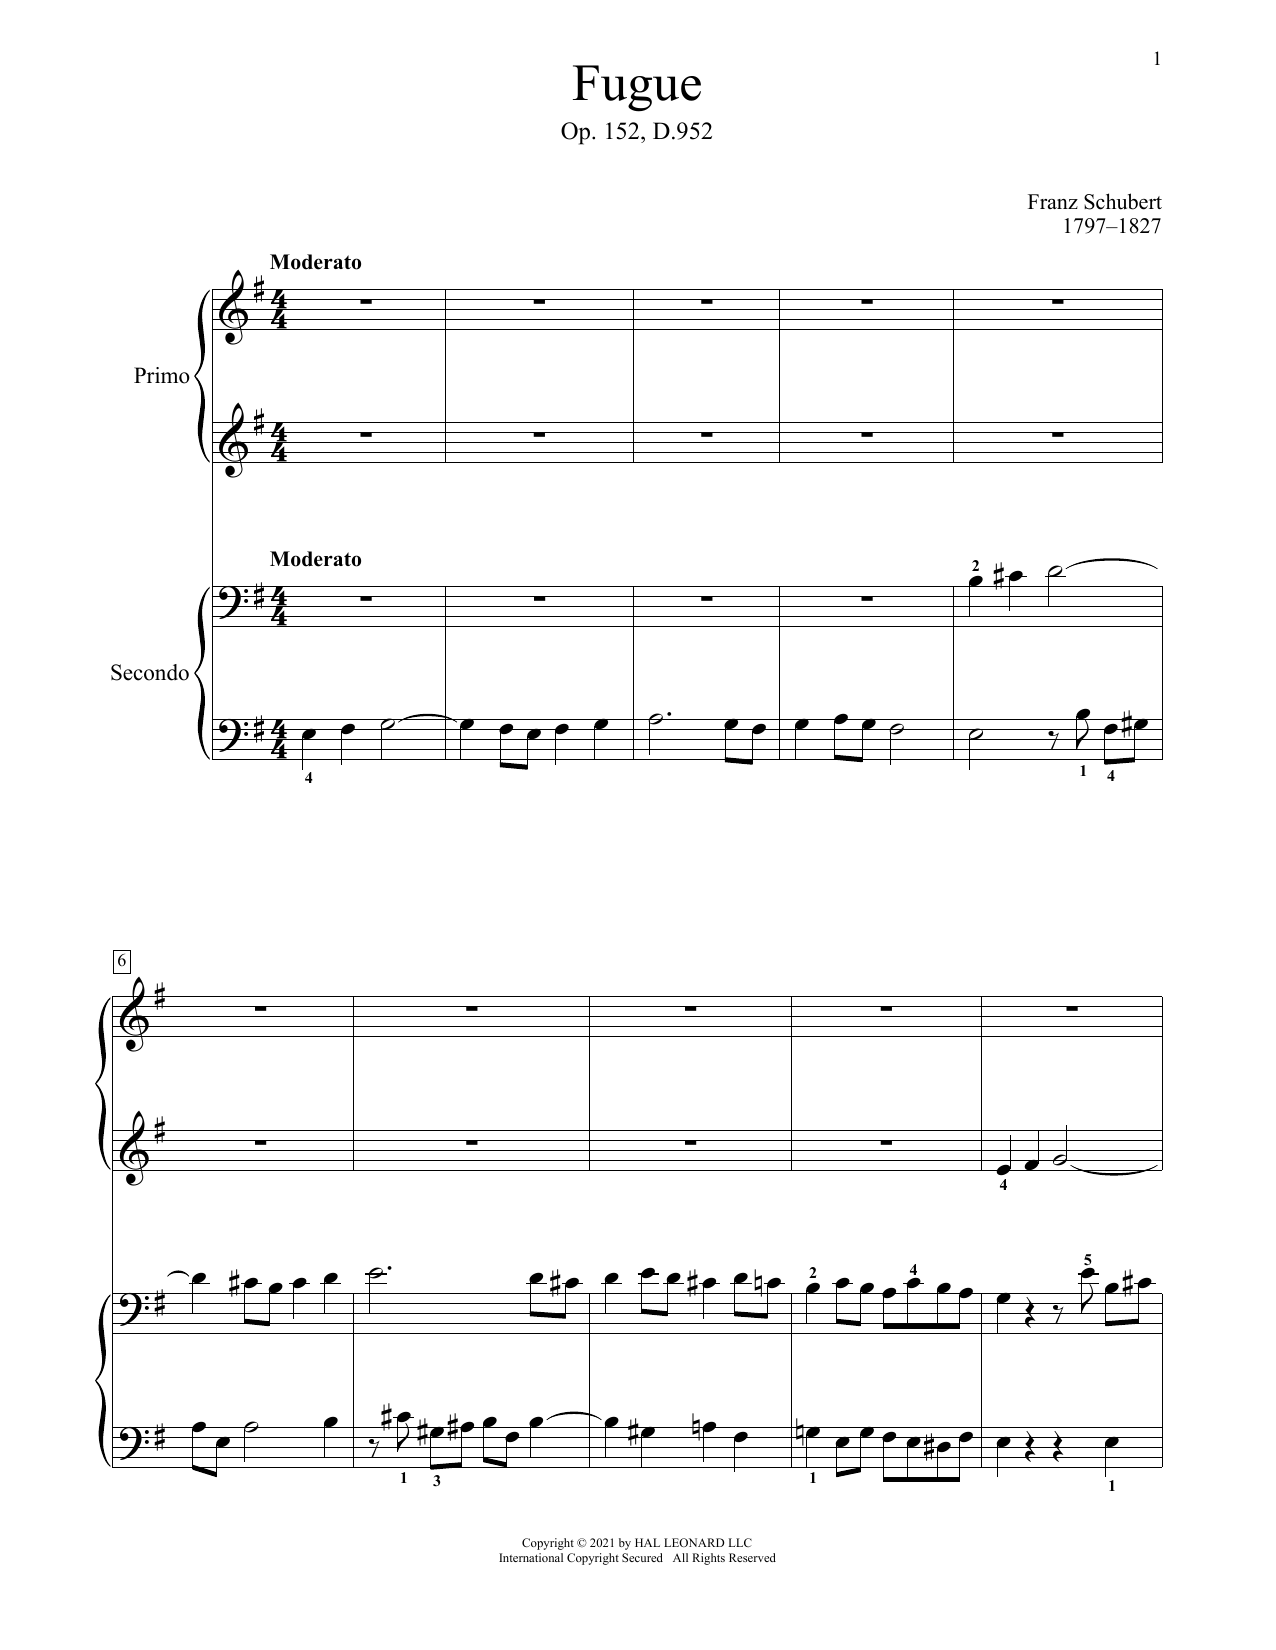 Download Franz Schubert Fugue, Op. 152, D. 952 Sheet Music